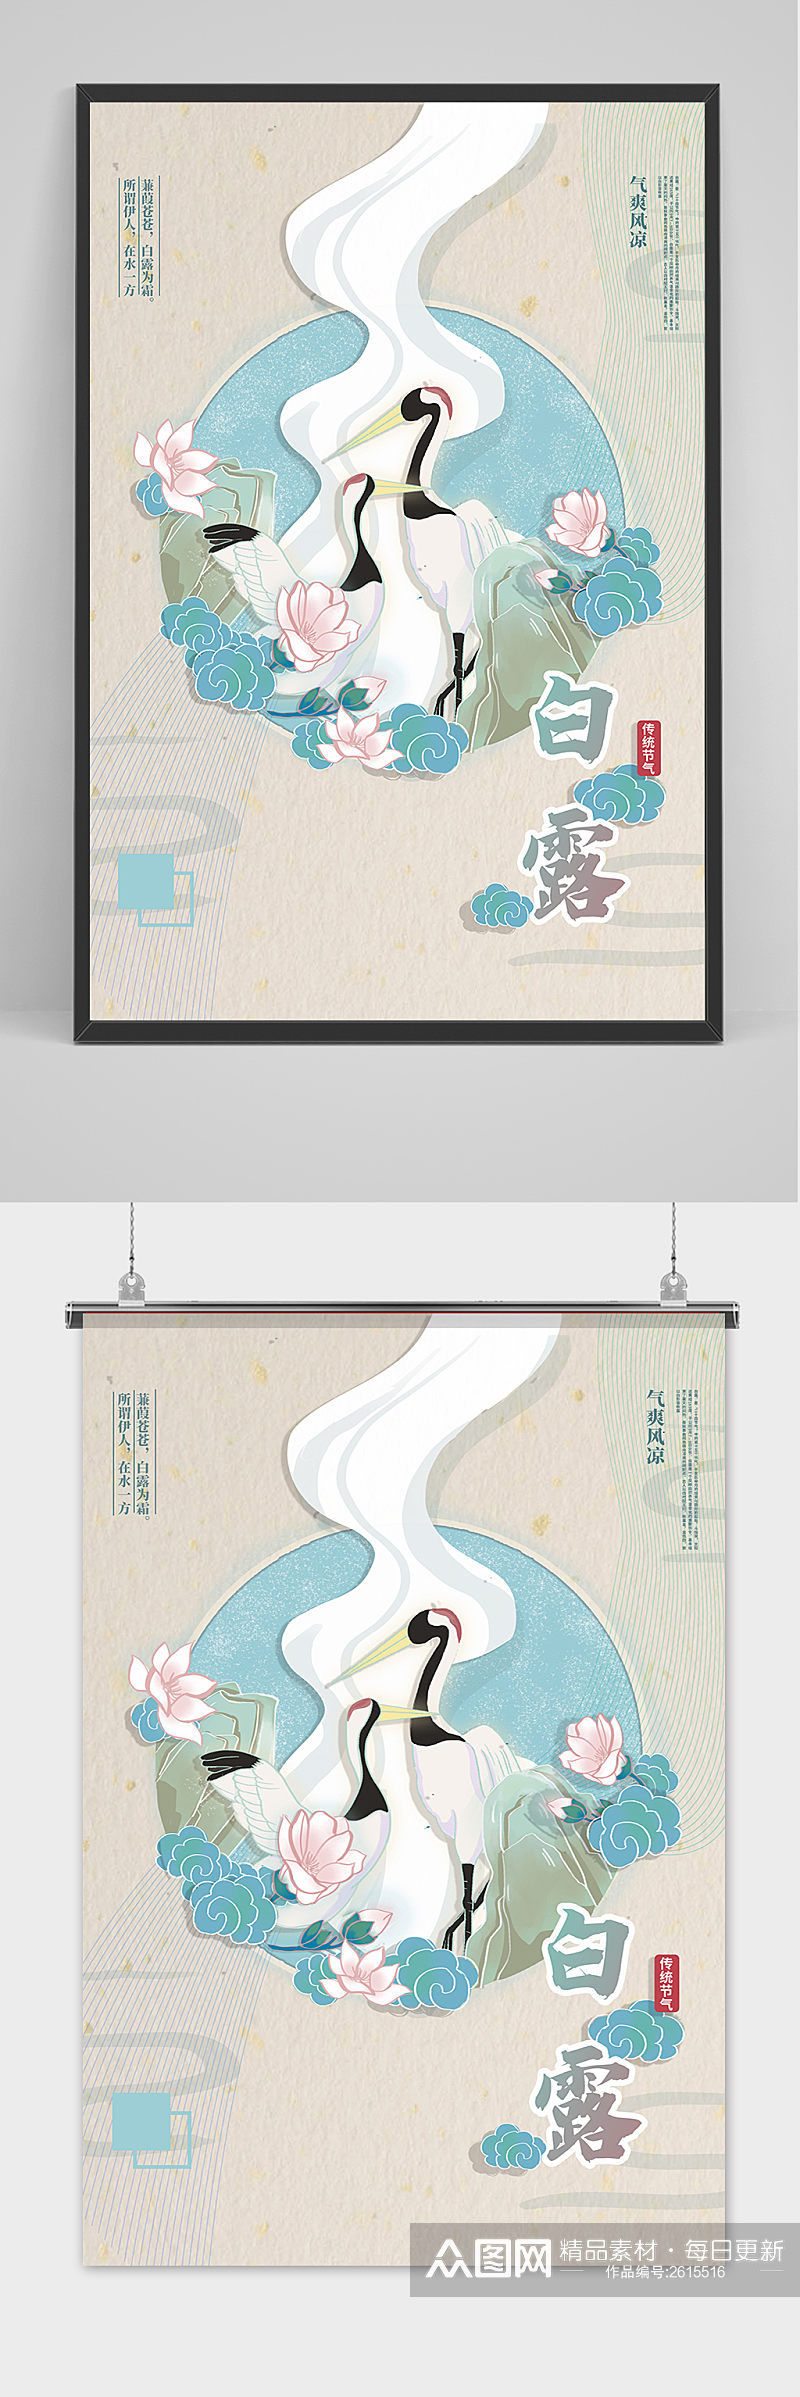 手绘中国风白露节传统节气海报素材